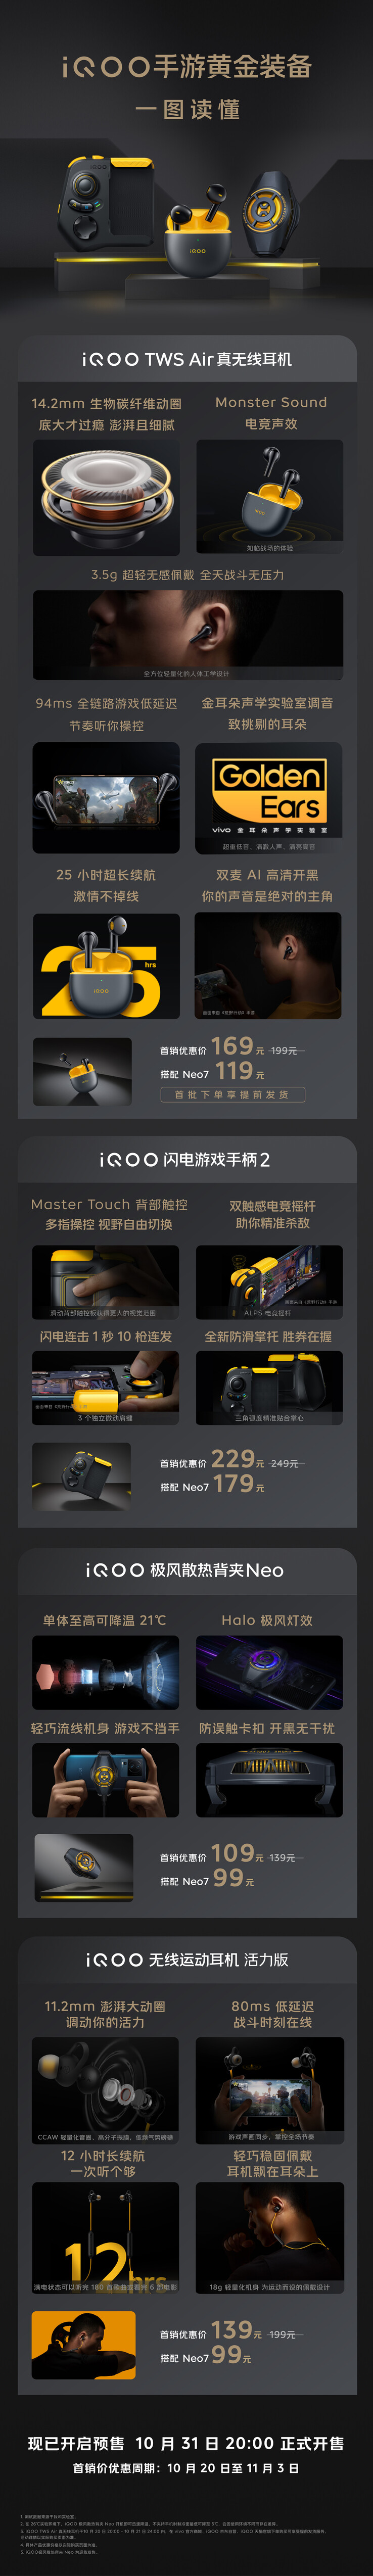 iQOO lanceert een heel ecosysteem van accessoires naast de Neo7. (Bron: iQOO)